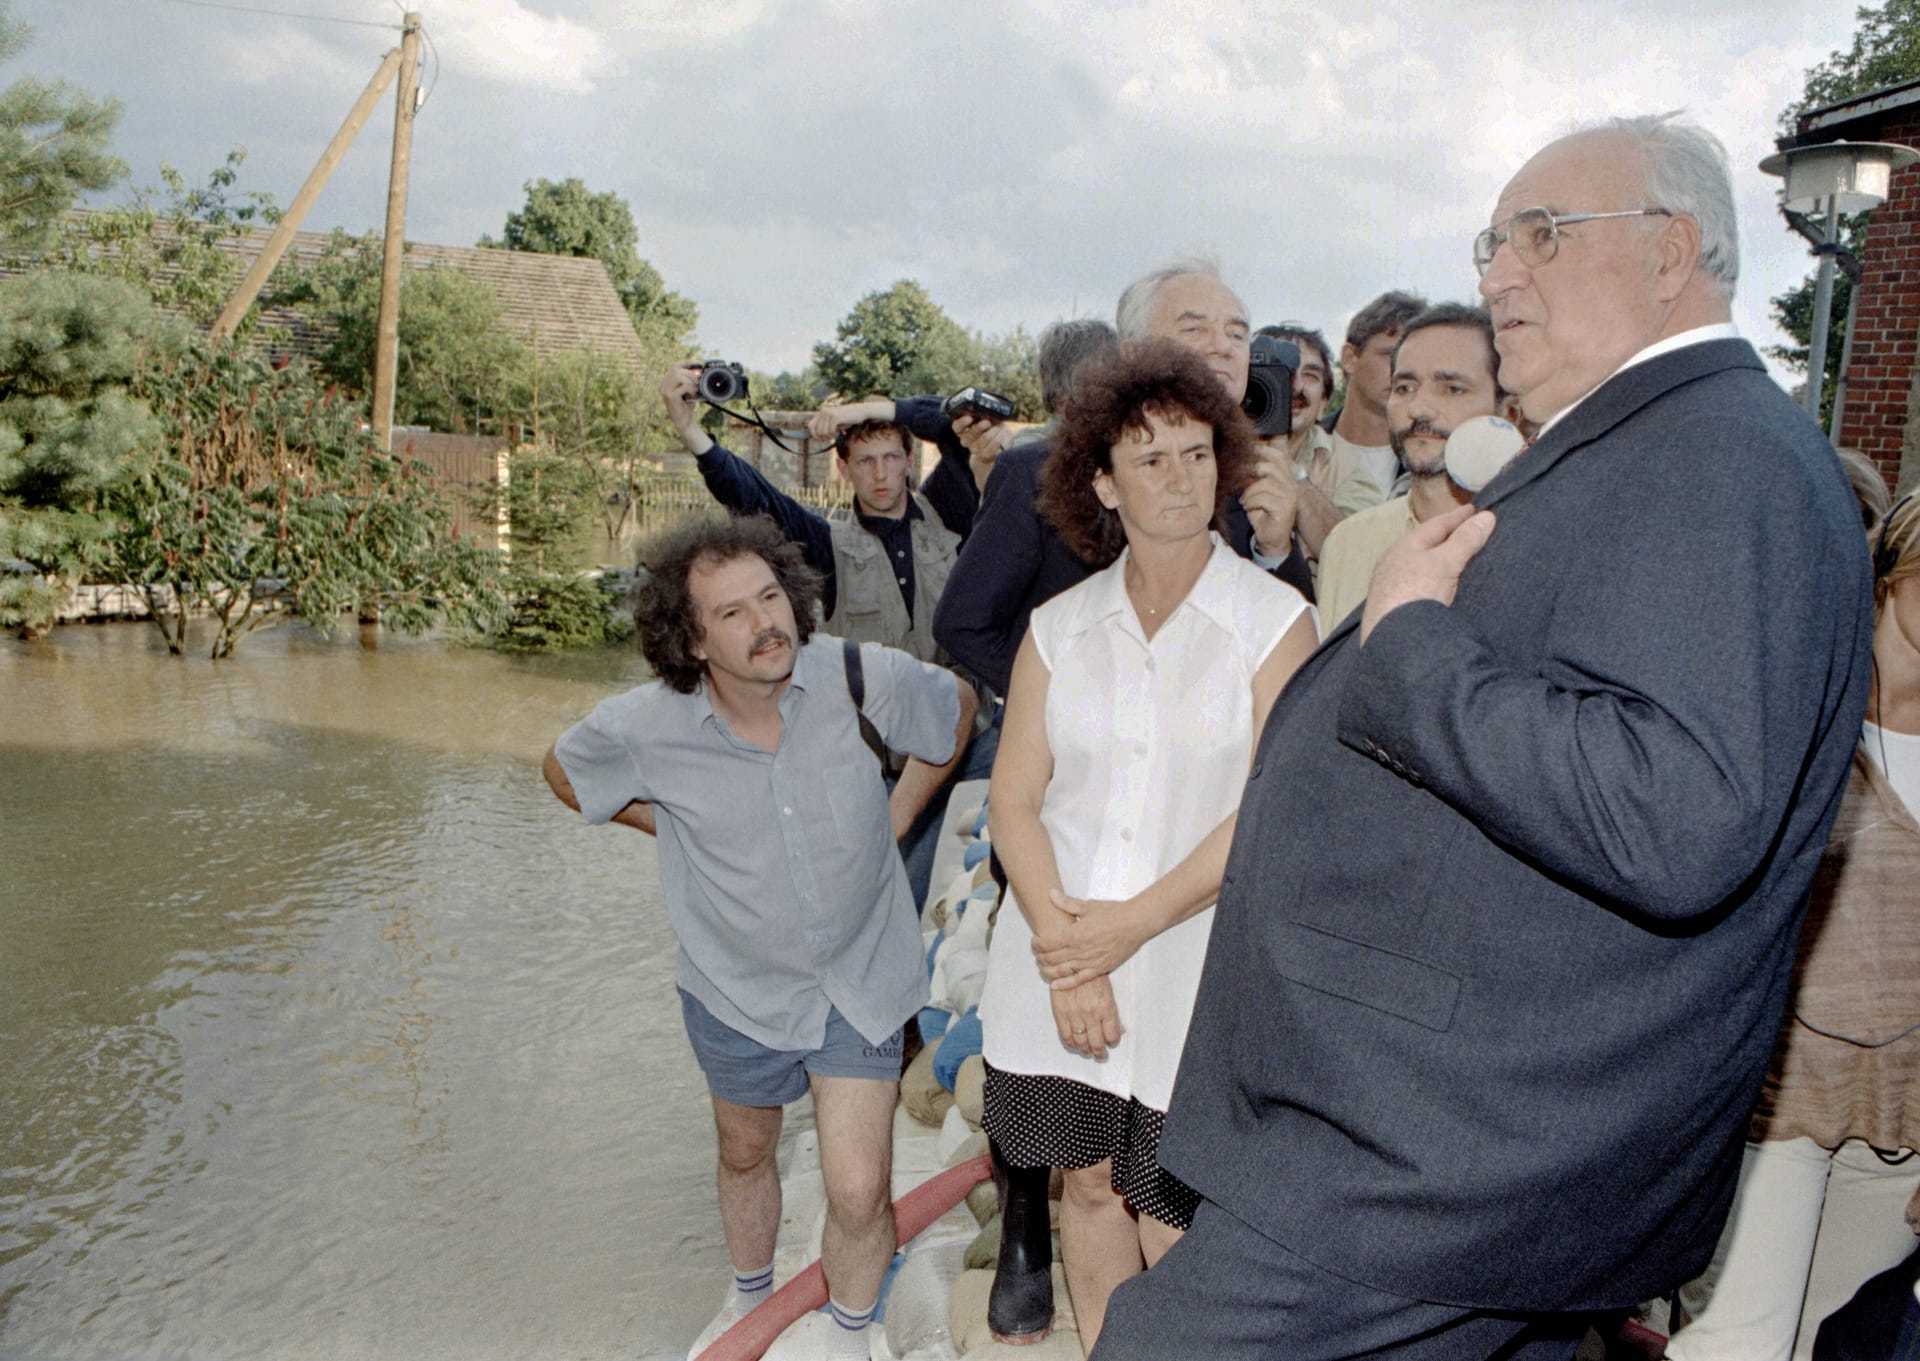 Der damalige Bundeskanzler Helmut Kohl steht auf einem Deich aus Sandsäcken im überfluteten Dorf Ratzdorf. Der Ort in Brandenburg nahe der polnischen Grenze wurde 1997 durch das Oderhochwasser teilweise überflutet.